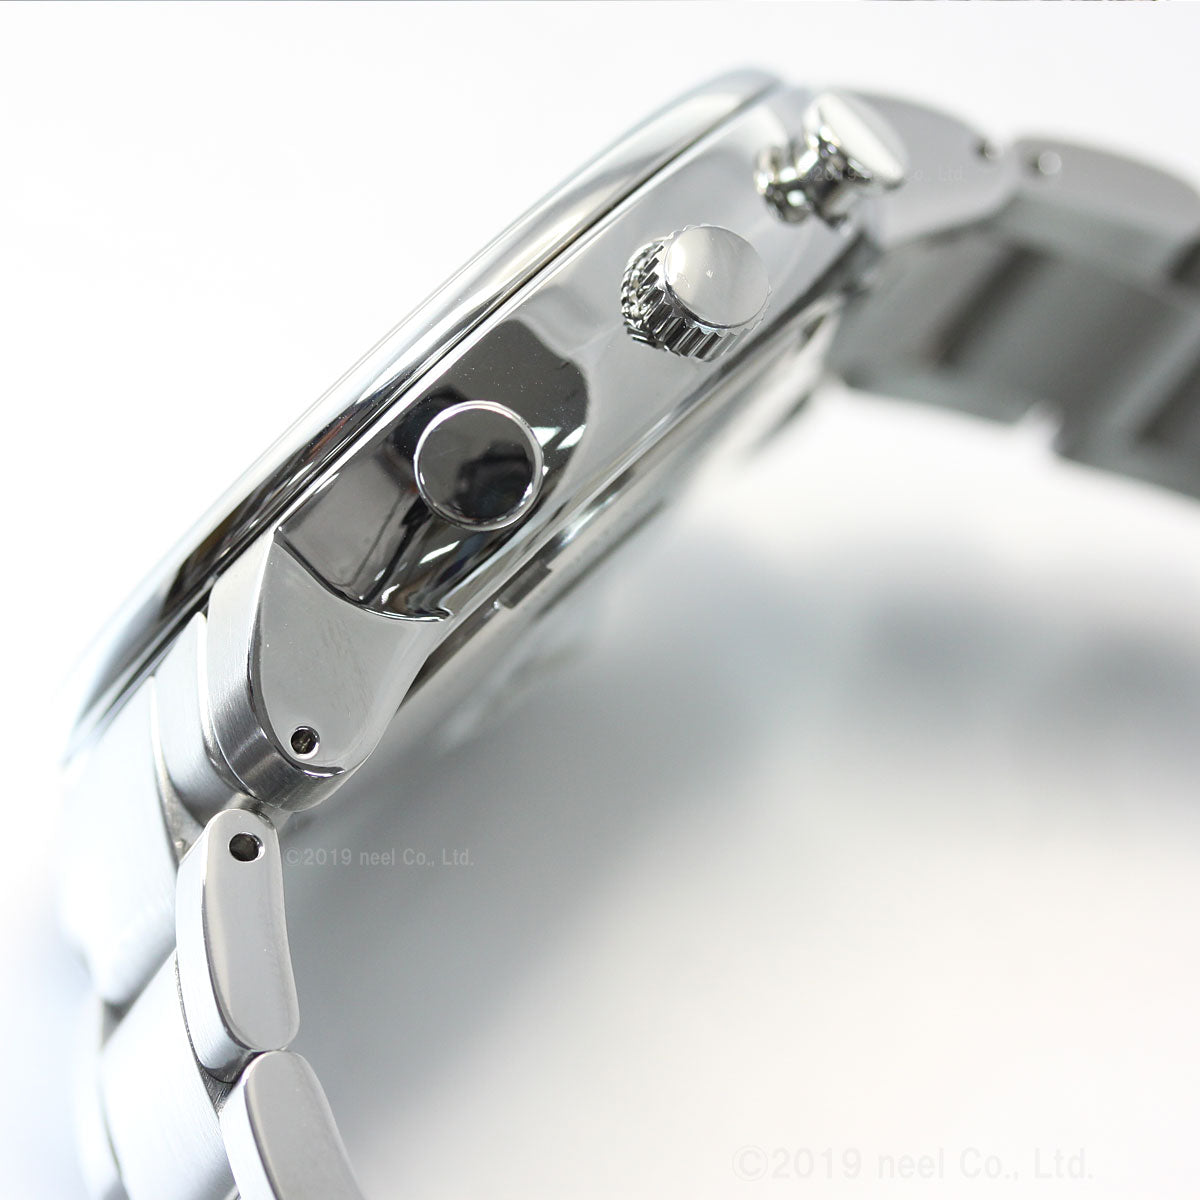 イッセイミヤケ ISSEY MIYAKE 腕時計 メンズ C シー 岩崎一郎デザイン クロノグラフ NYAD002